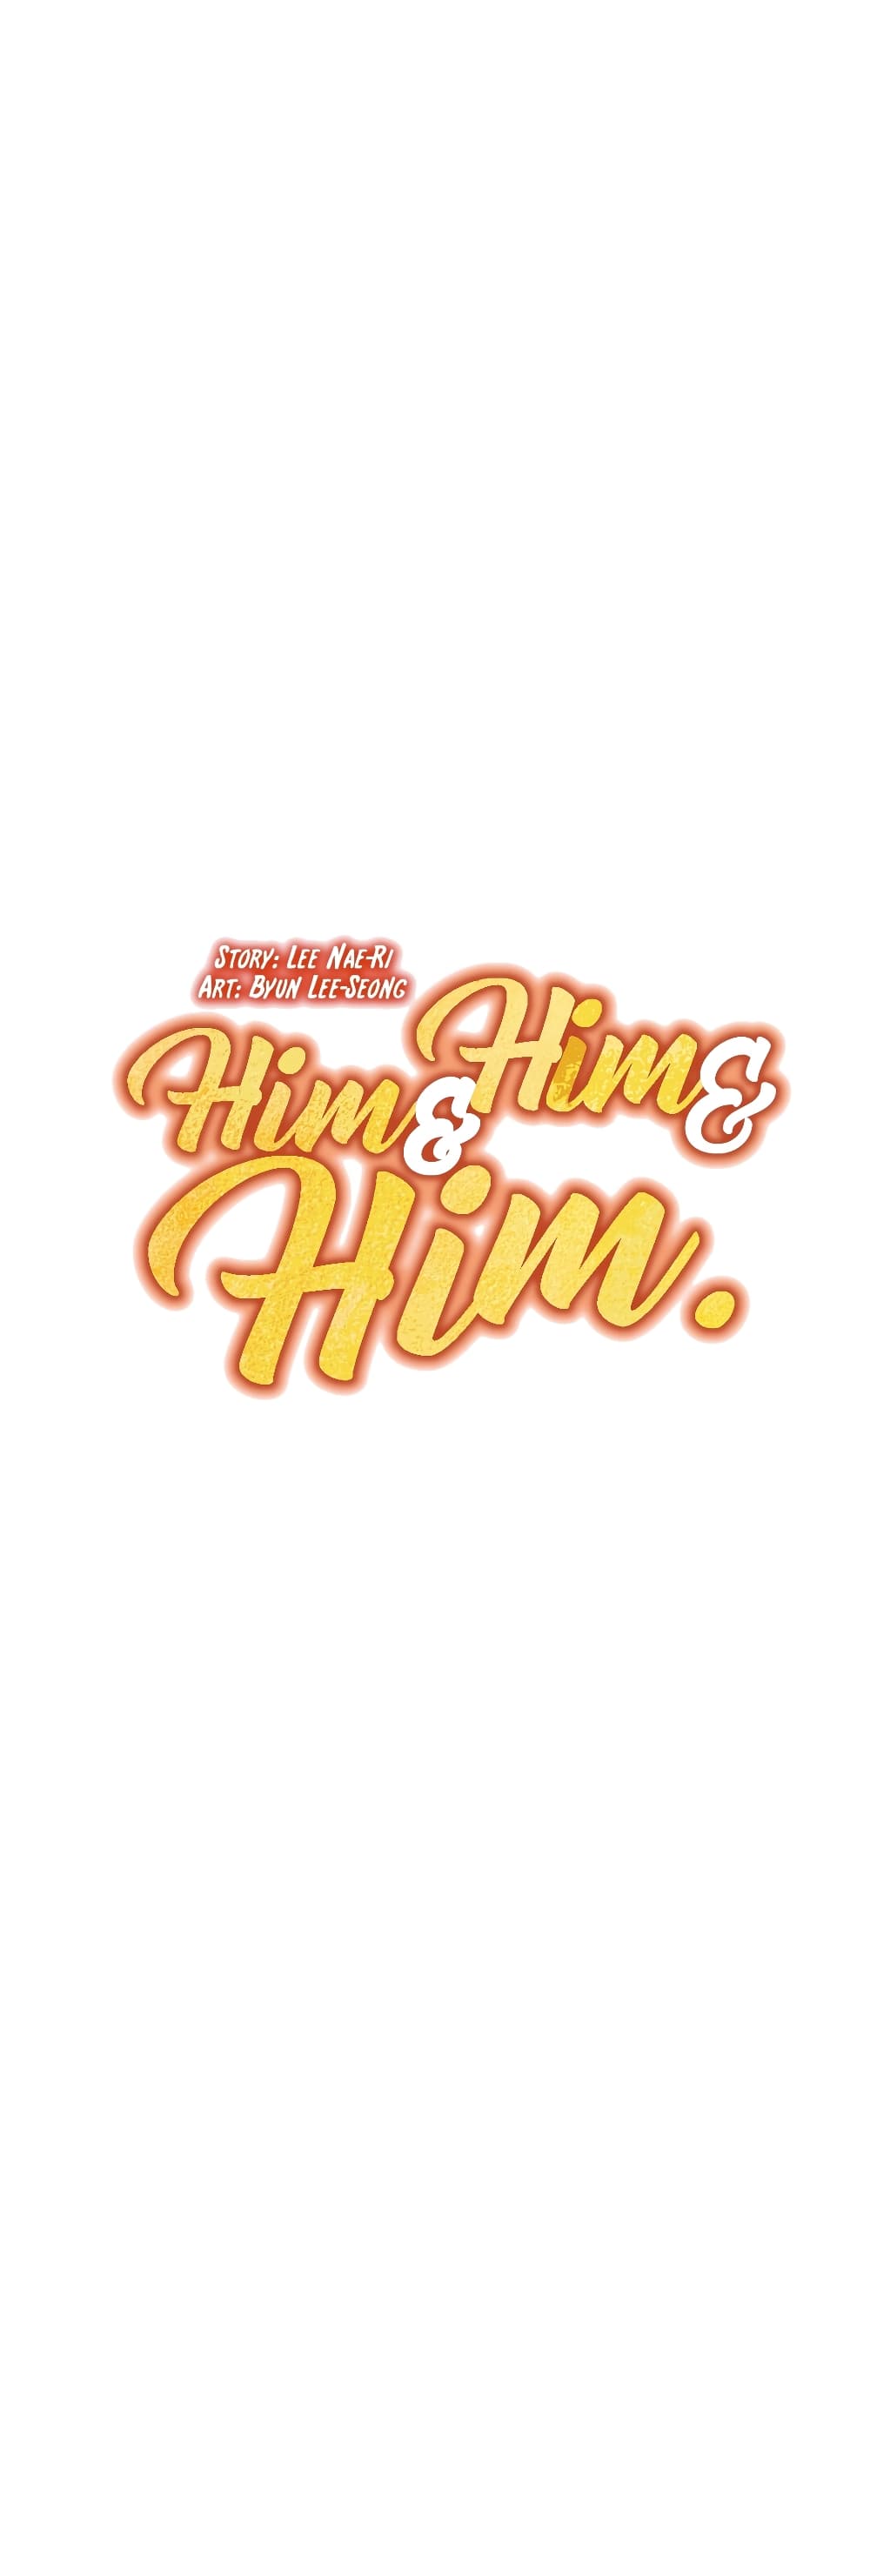 Him & Him & Him 4-4